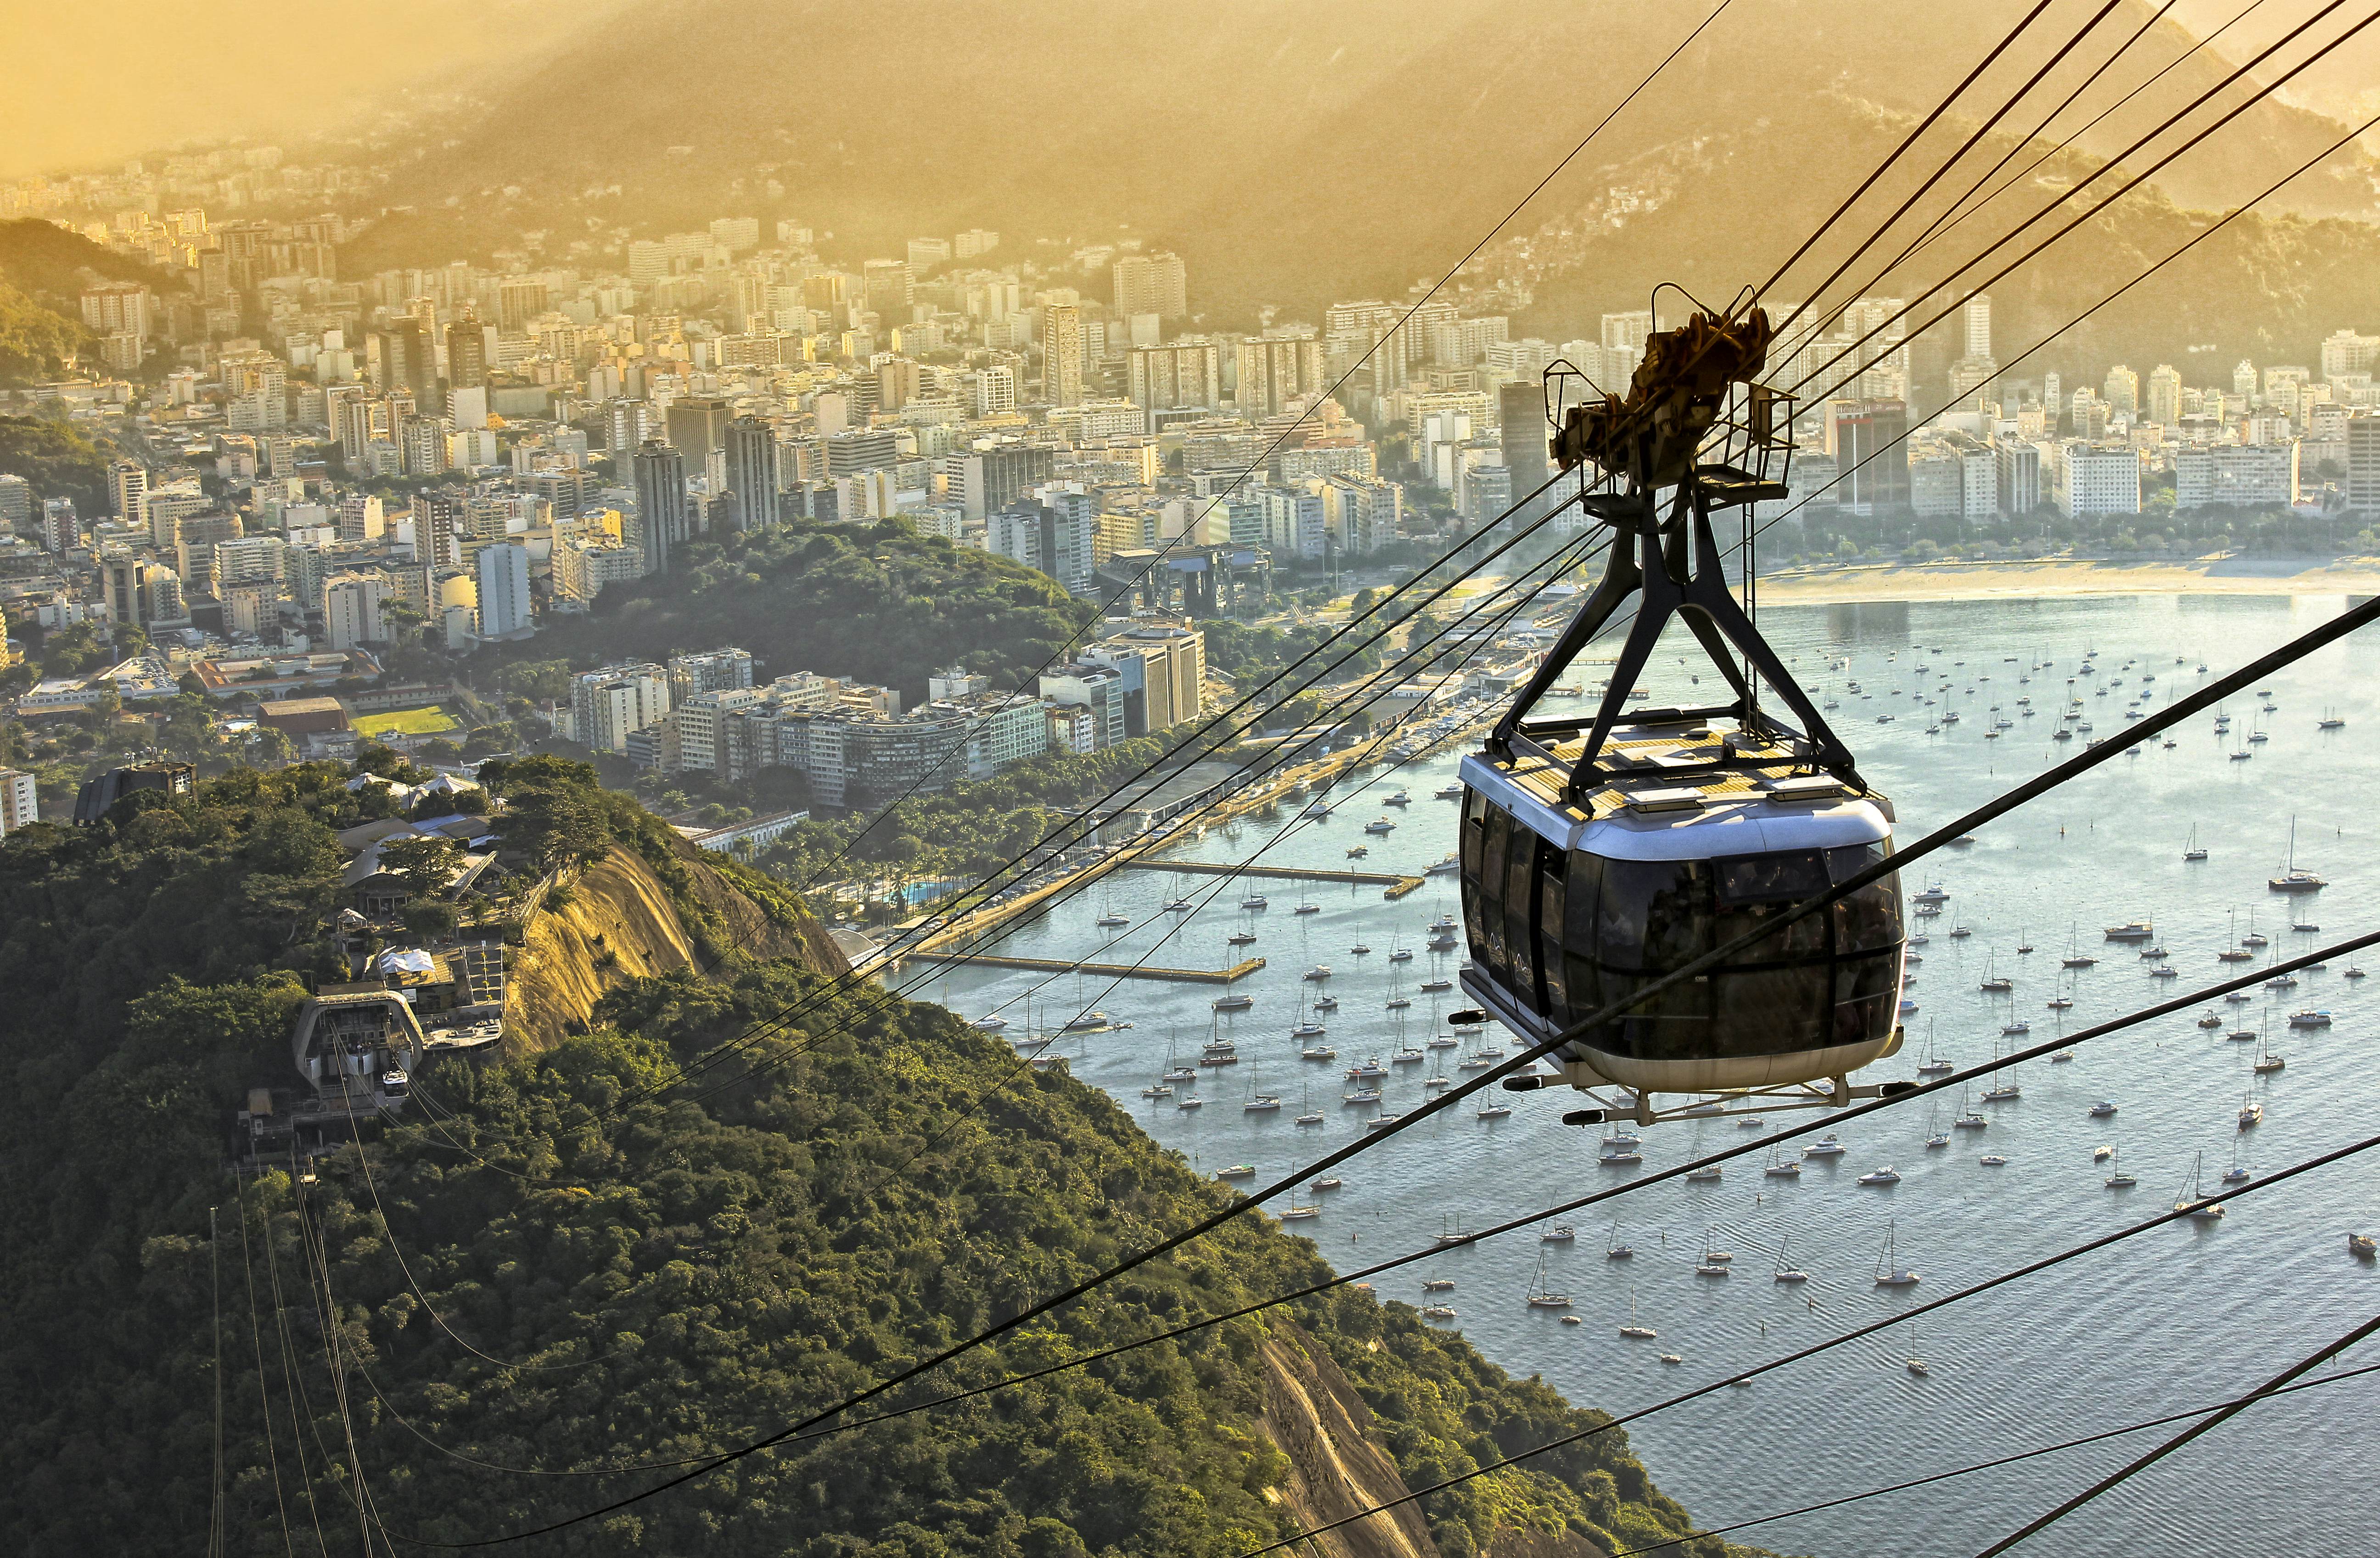 A Local's Guide to Rio de Janeiro, Brazil